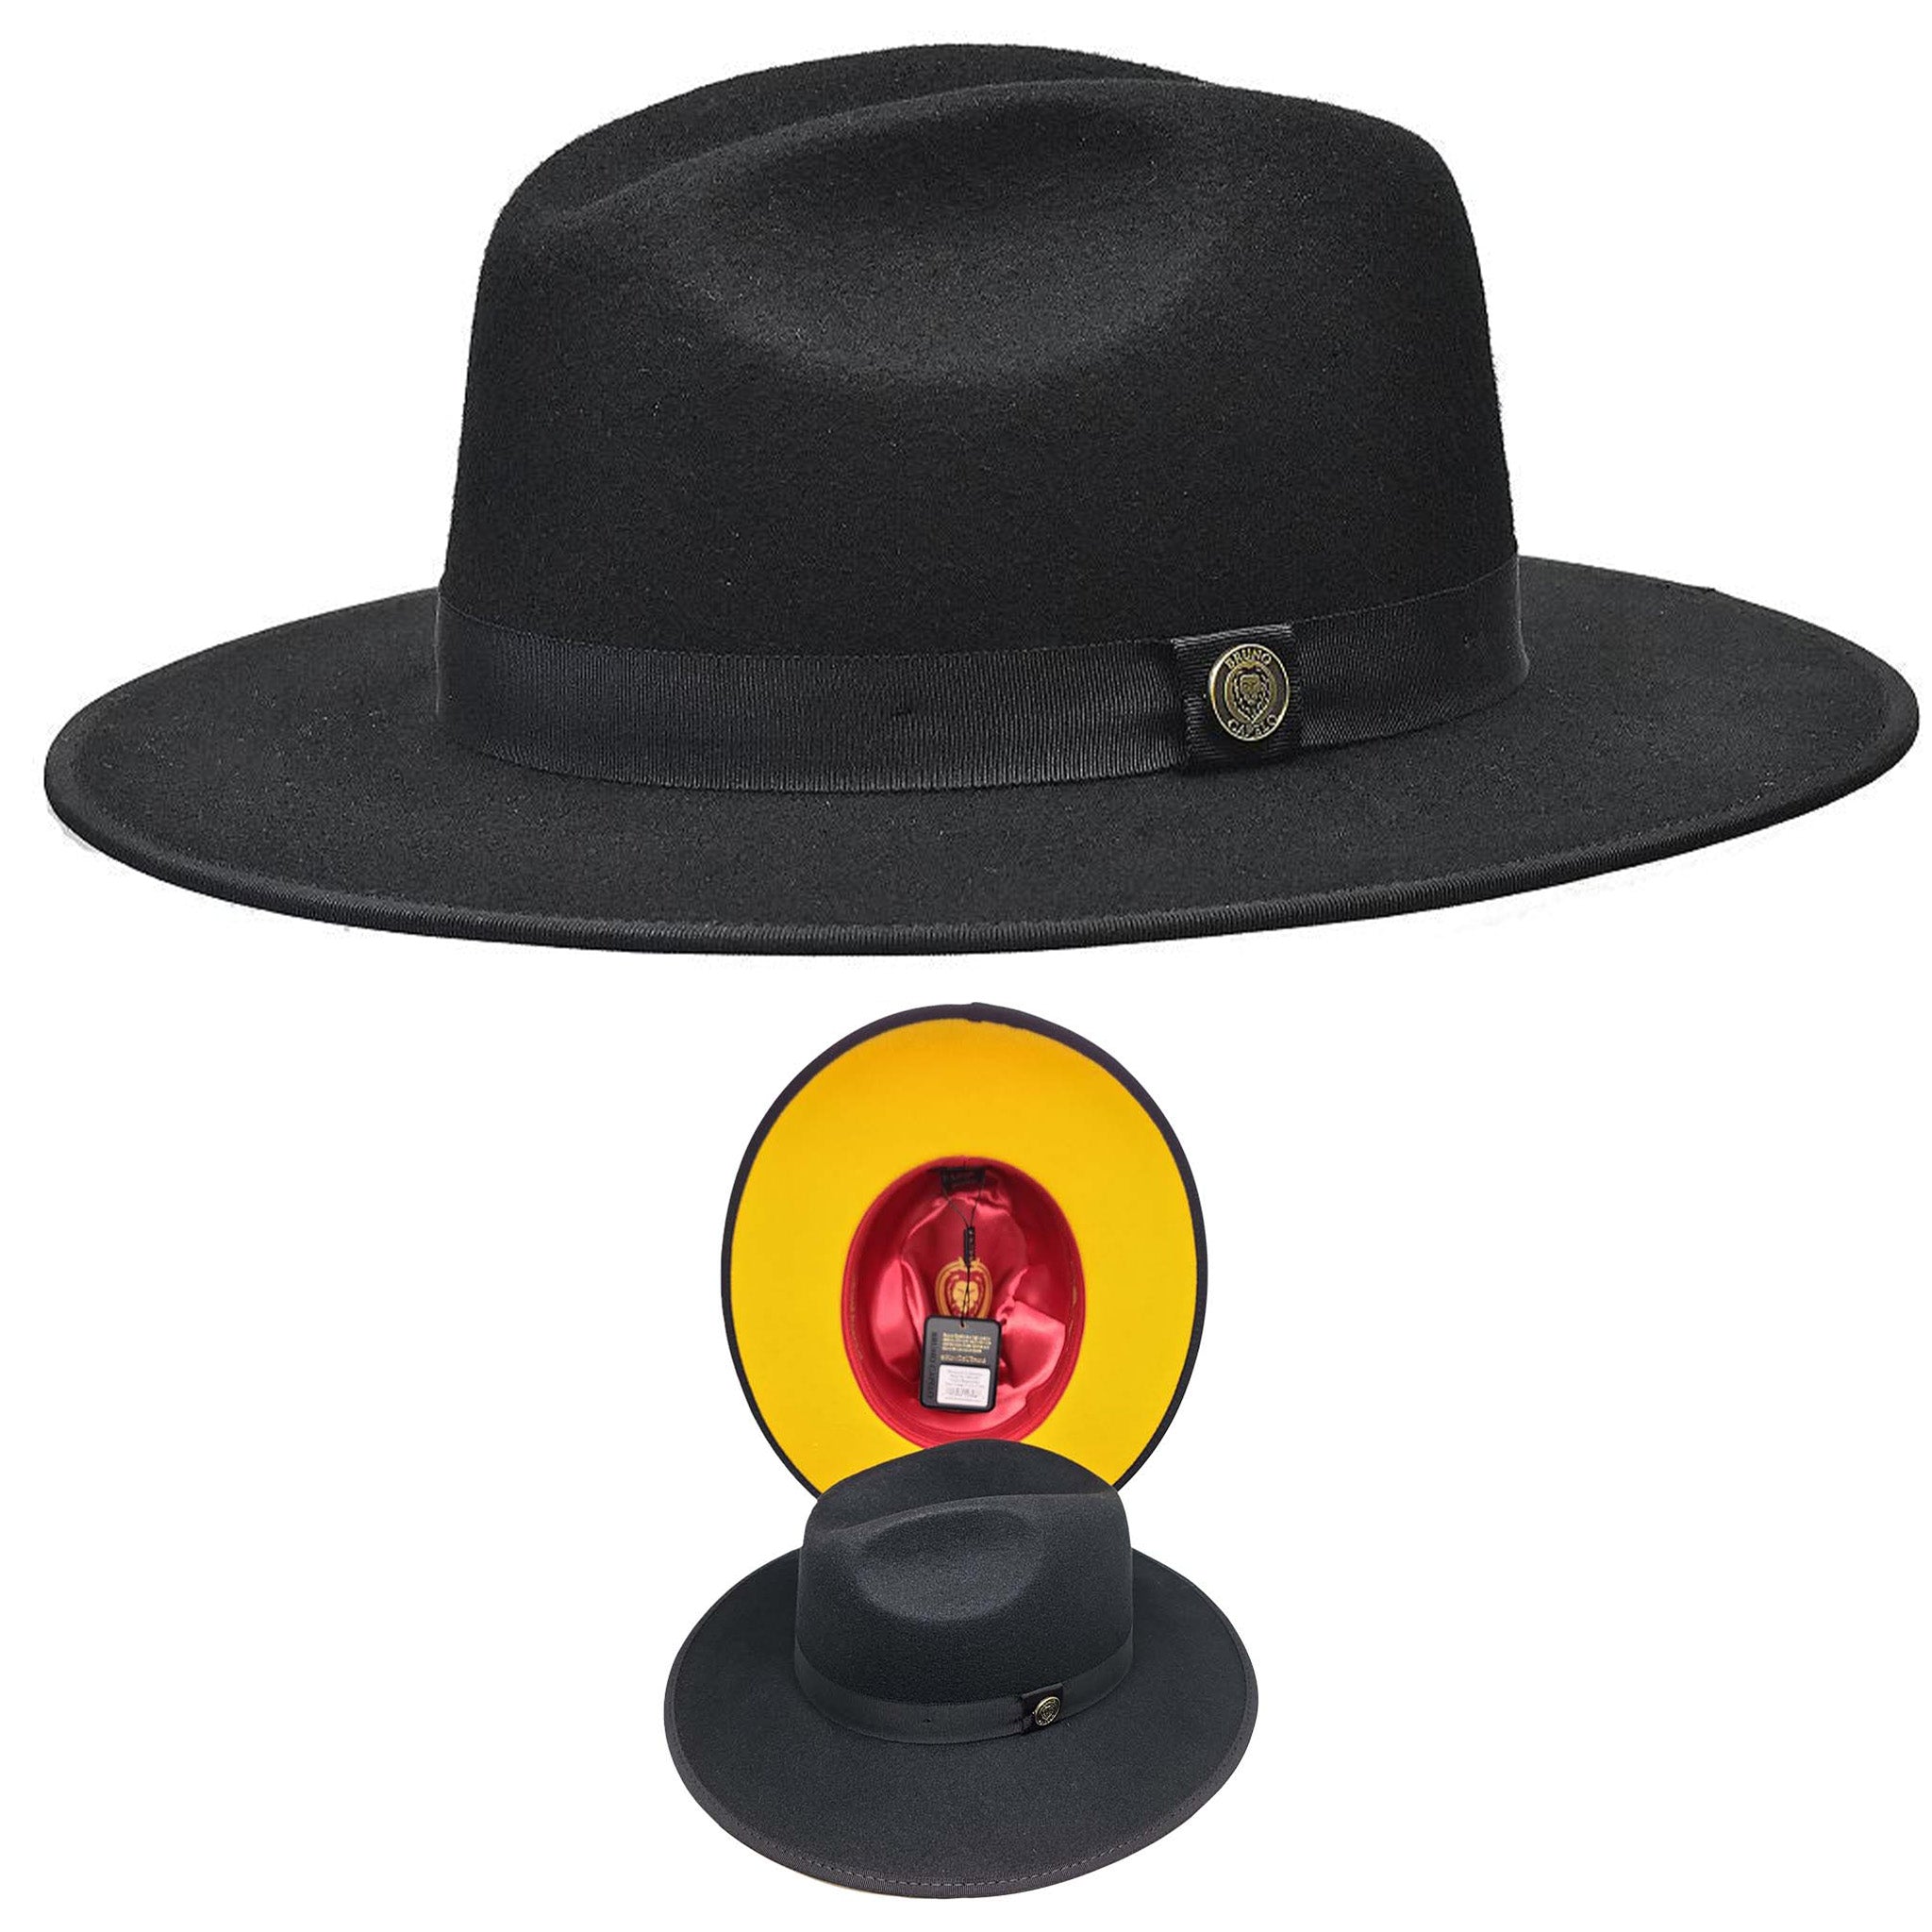 Black/Gold Contrast Bottom Hat